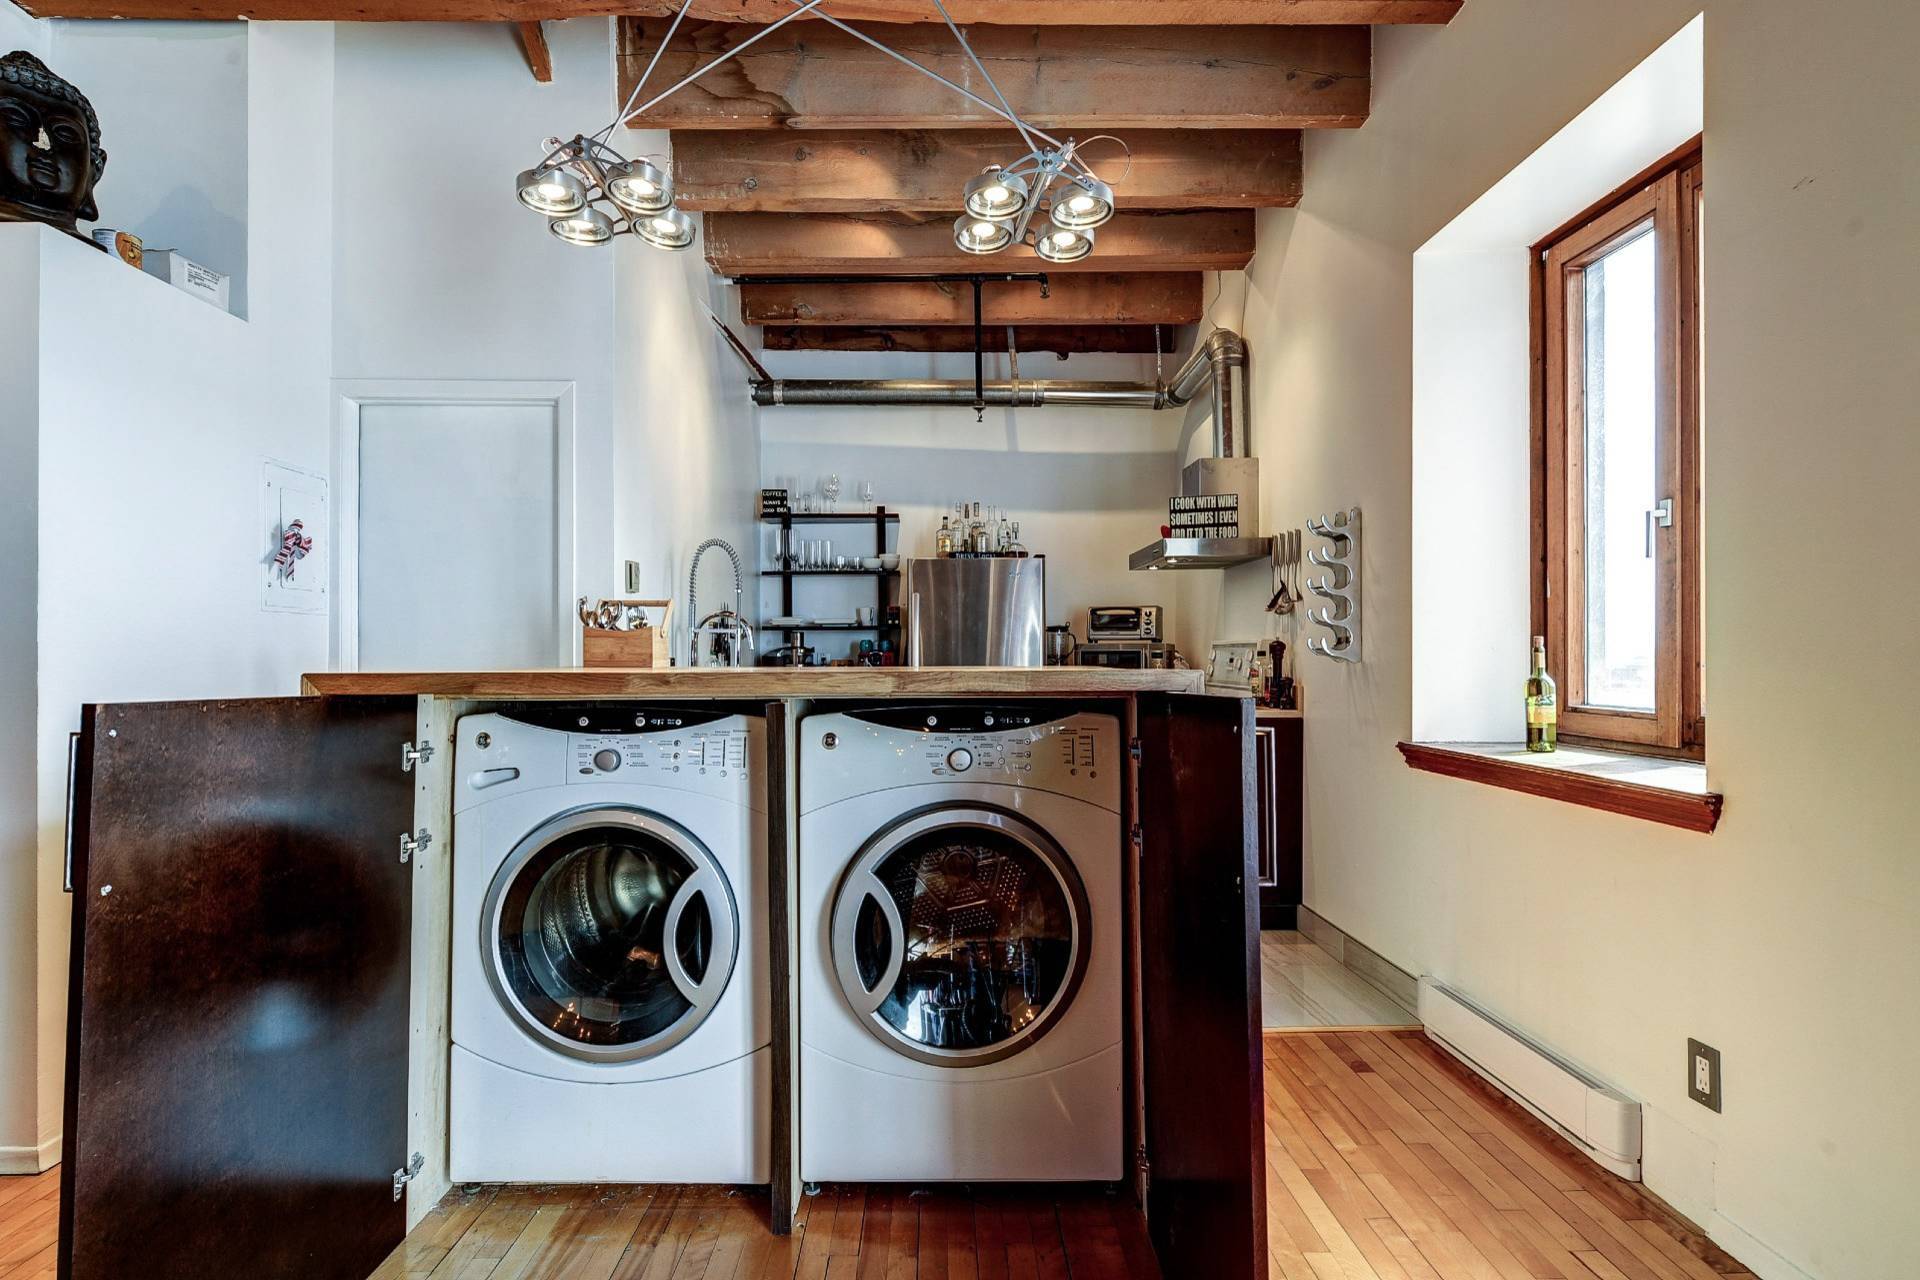 Стиральная машина на кухне: 145 фото идей дизайна + интересные планировки кухонь со стиральной машиной